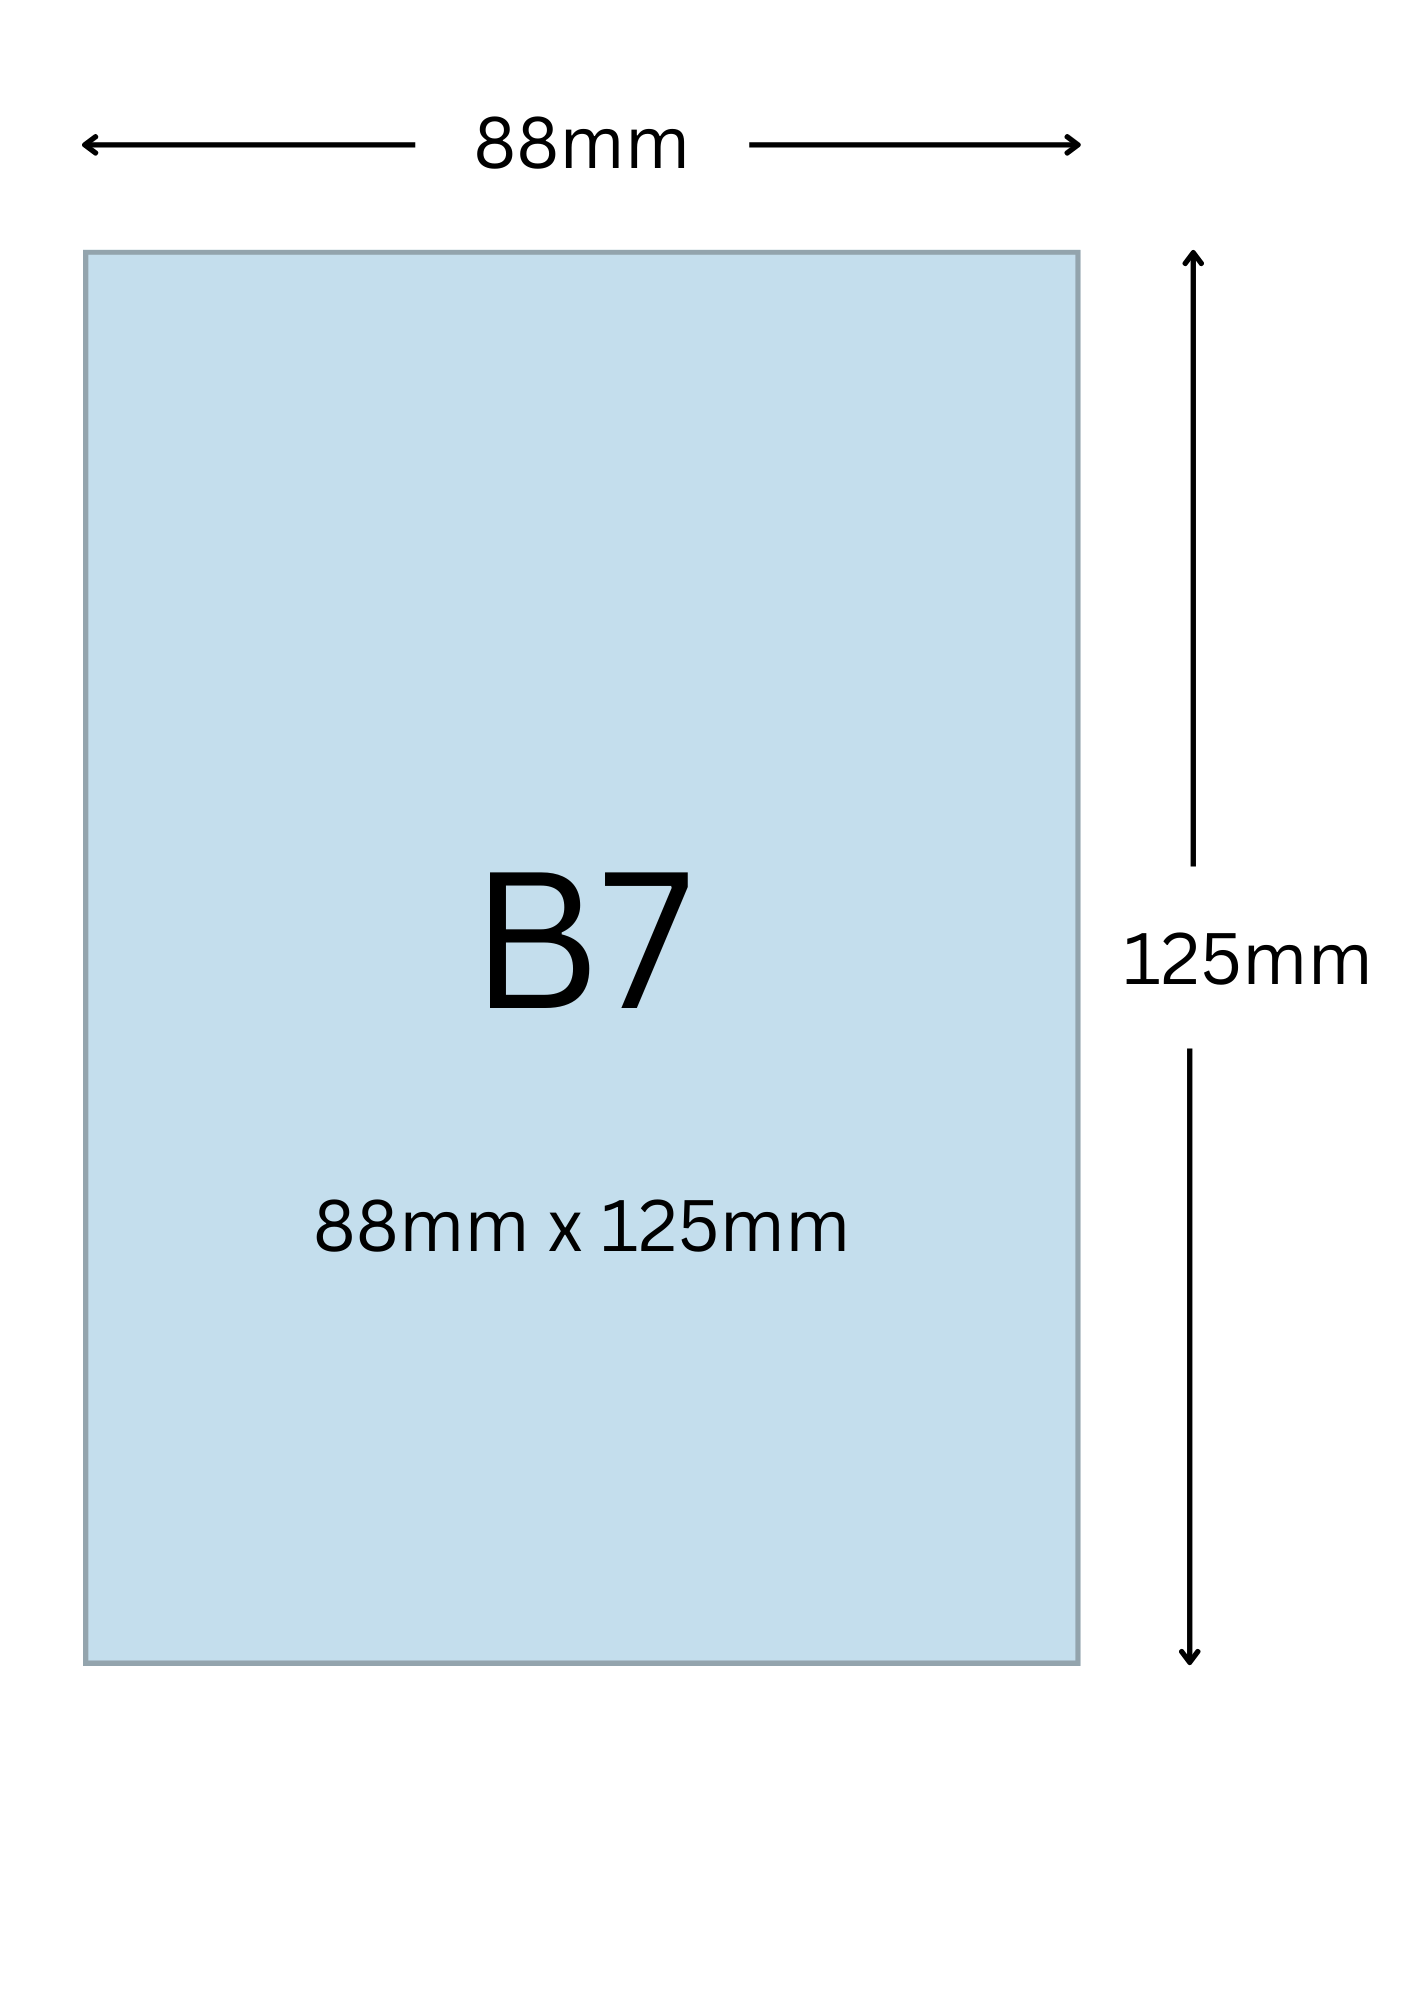 B7尺寸公分, B7紙張尺寸大小, B7紙張對應開數是幾開